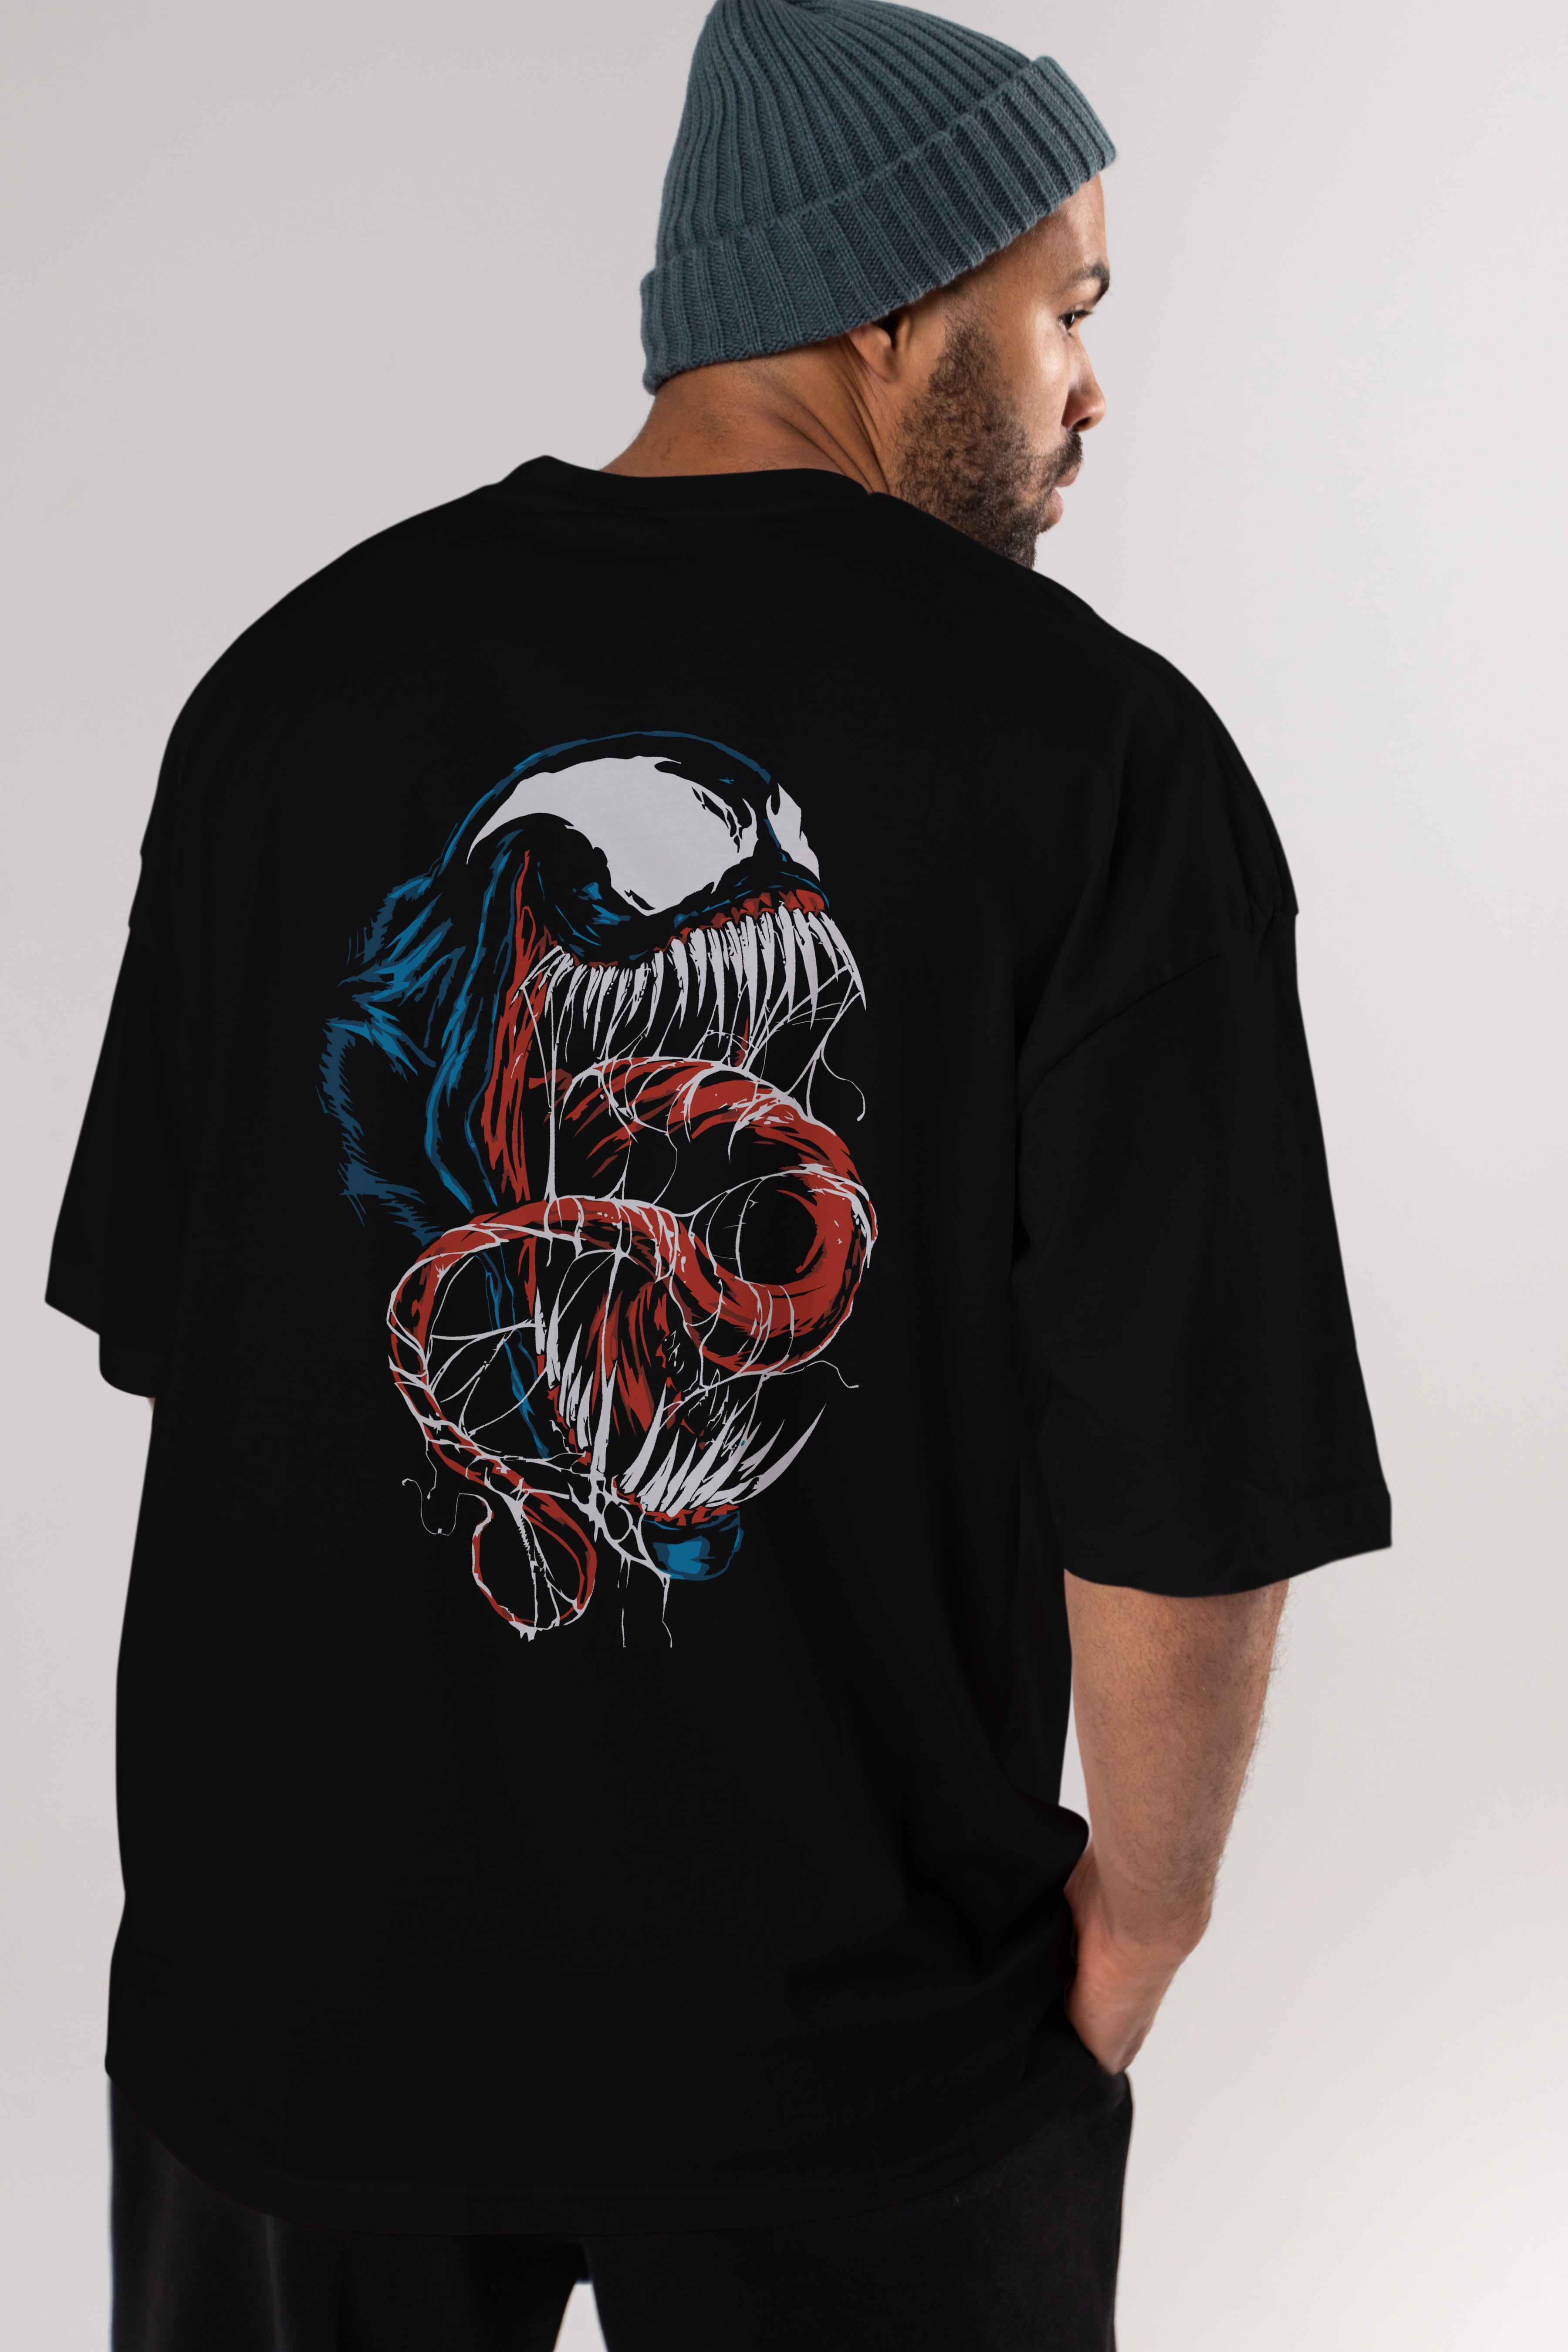 Venom (10) Arka Baskılı Oversize t-shirt Erkek Kadın Unisex %100 Pamuk Bisiklet Yaka tişort